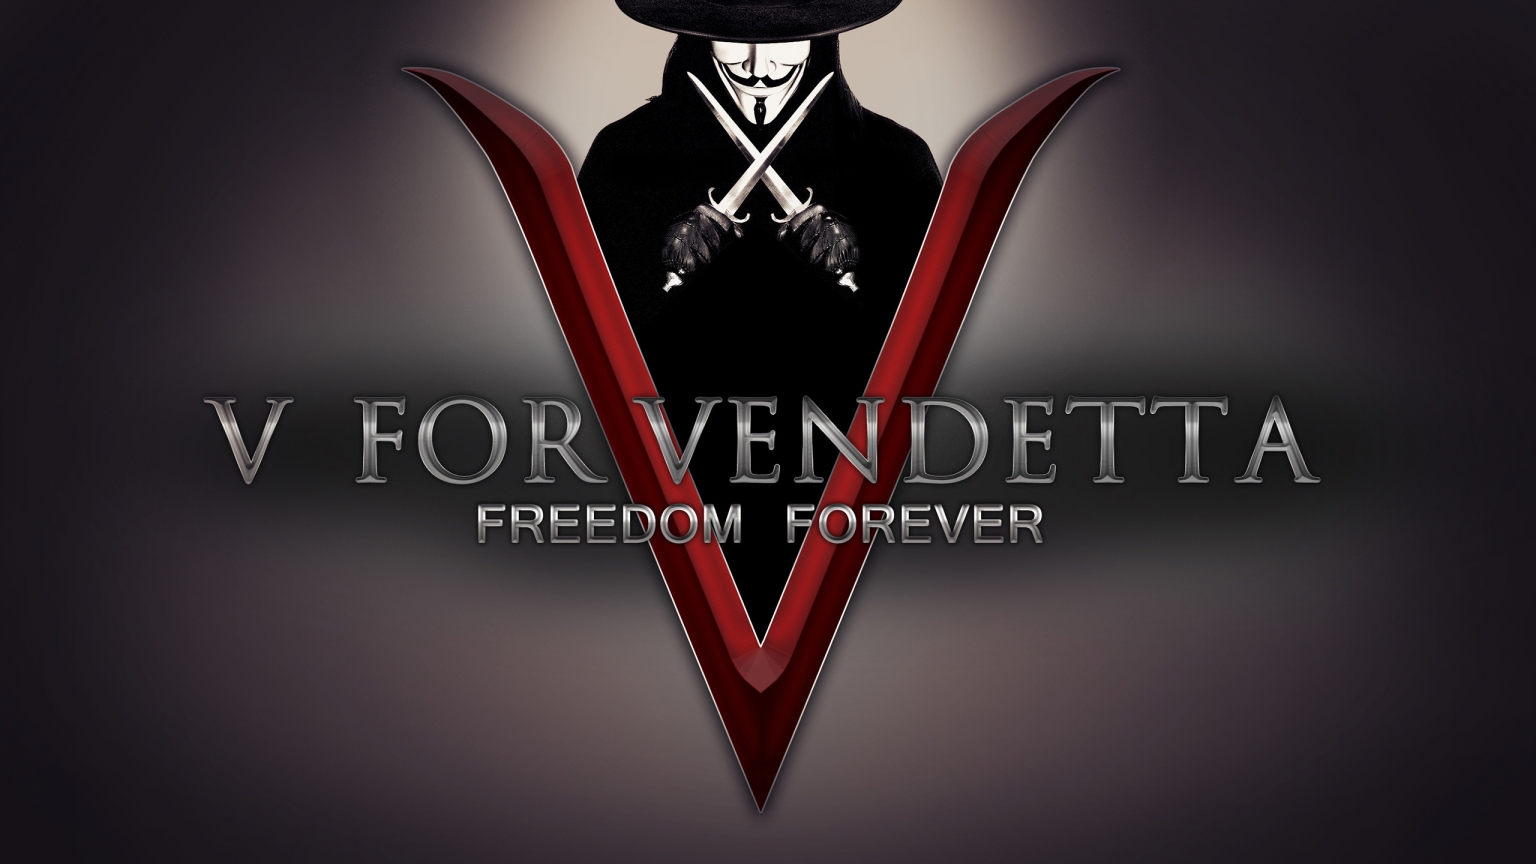 V for Vendetta Freedom Forever for 1536 x 864 HDTV resolution